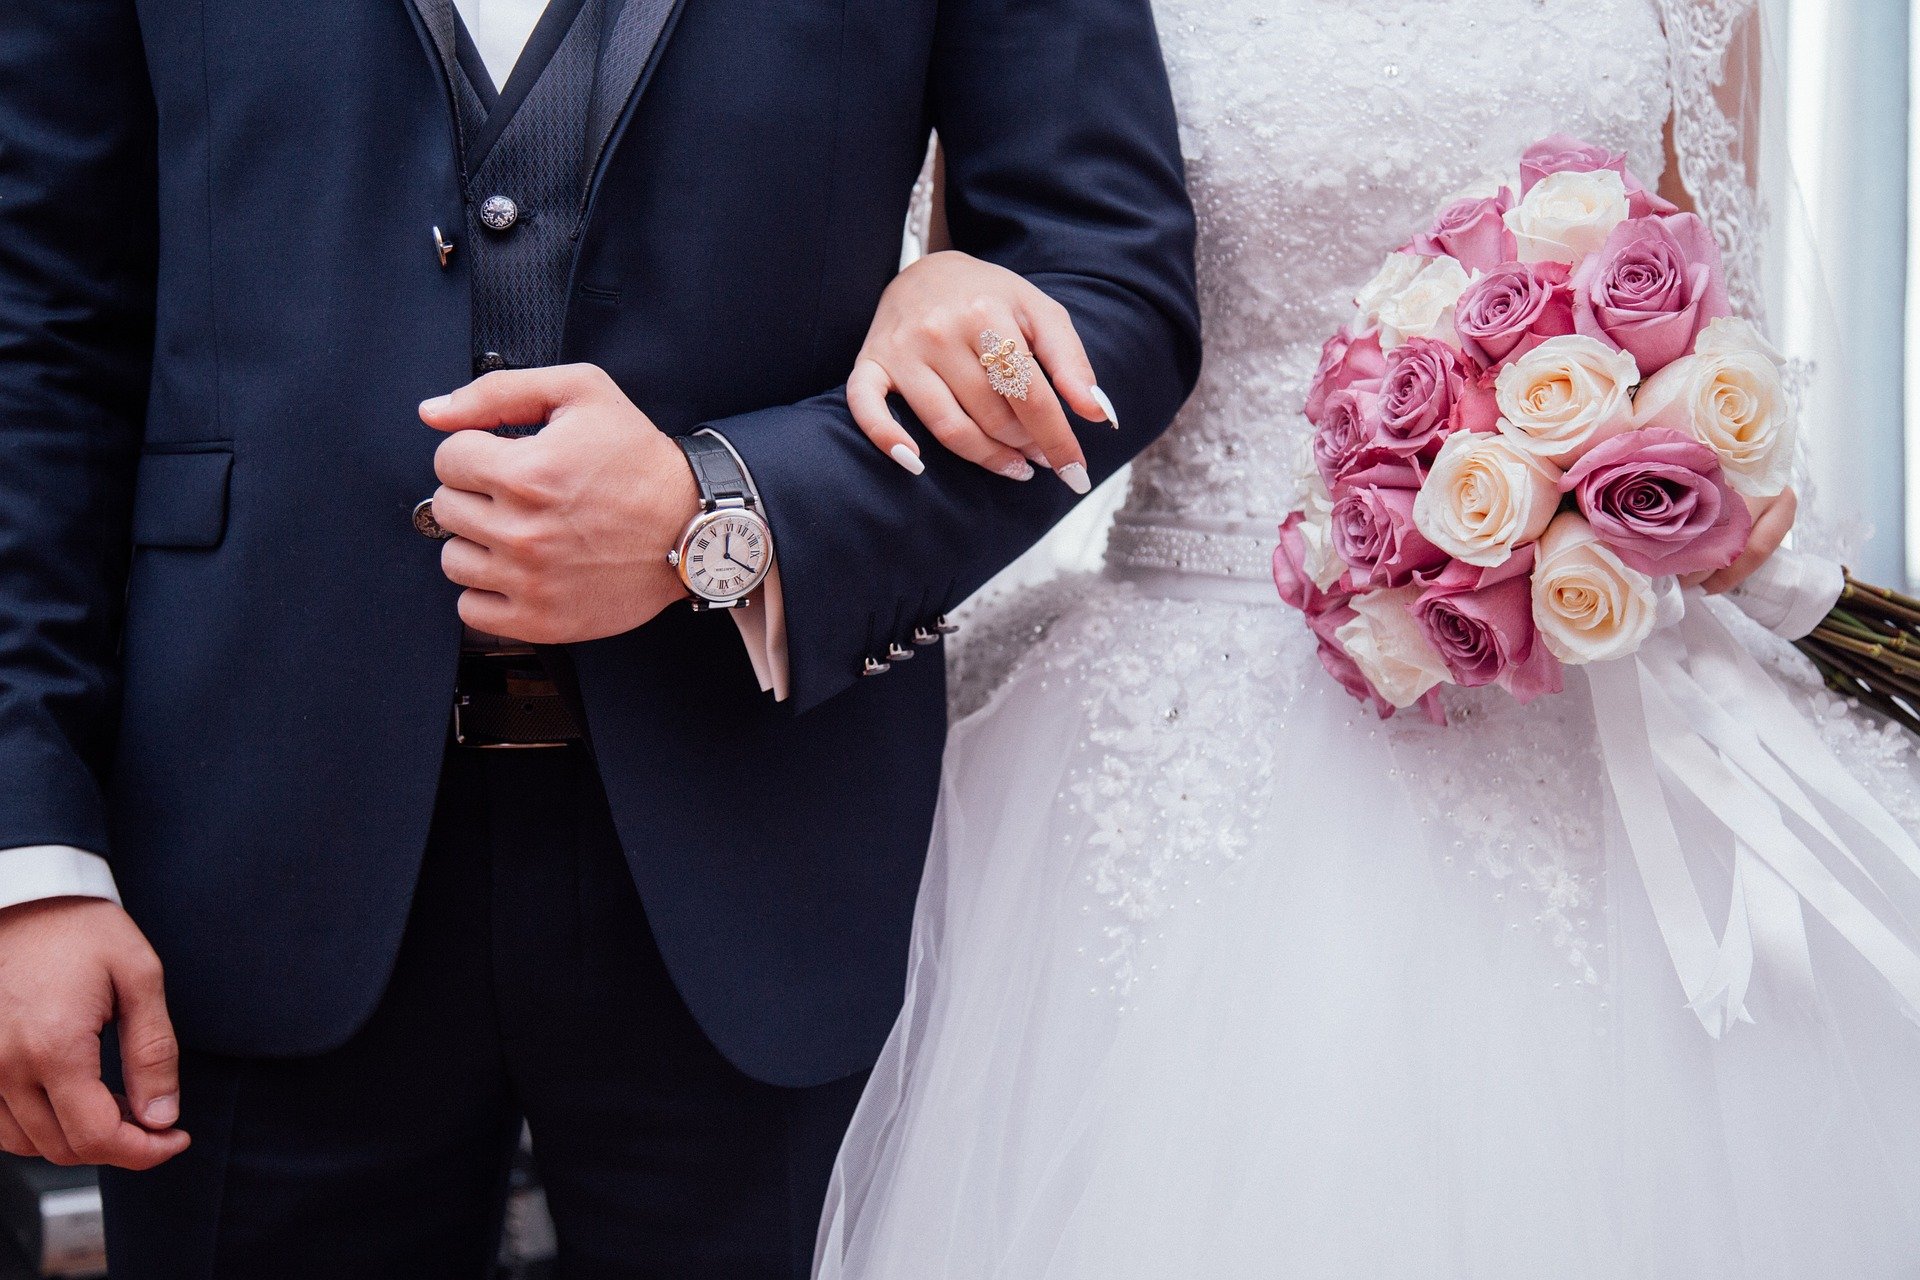 Mujer se divorcia a tres minutos de casarse por un comentario de su esposo